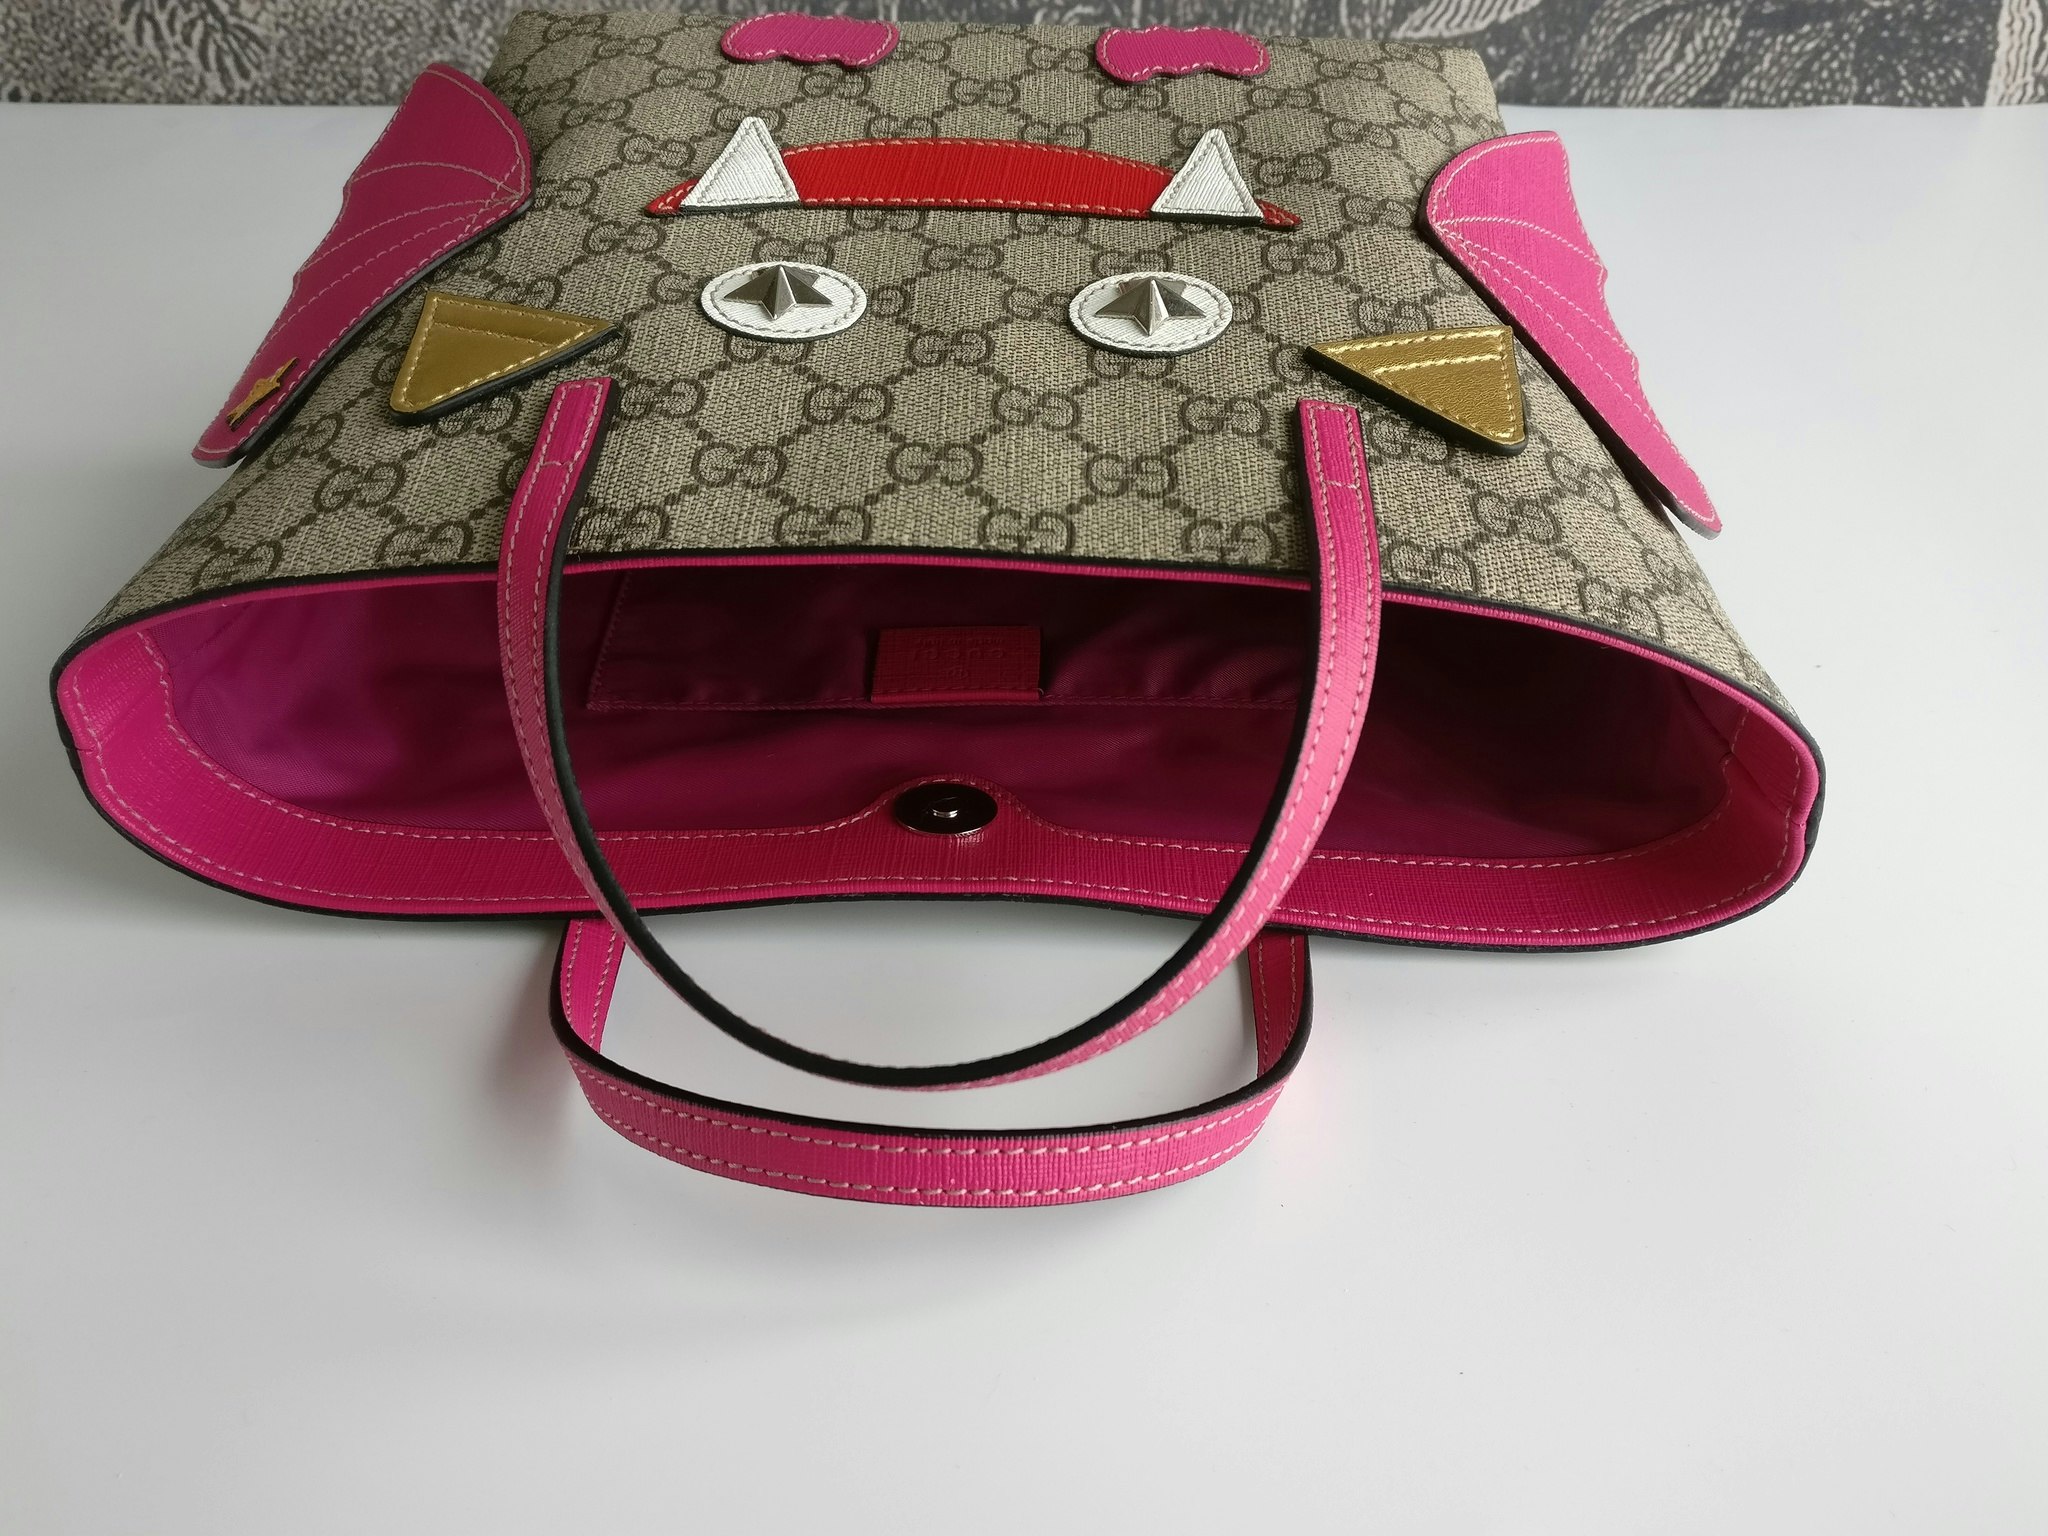 Gucci Girls Double G Tote Handbag with Deer Print | BAMBINIFASHION.COM